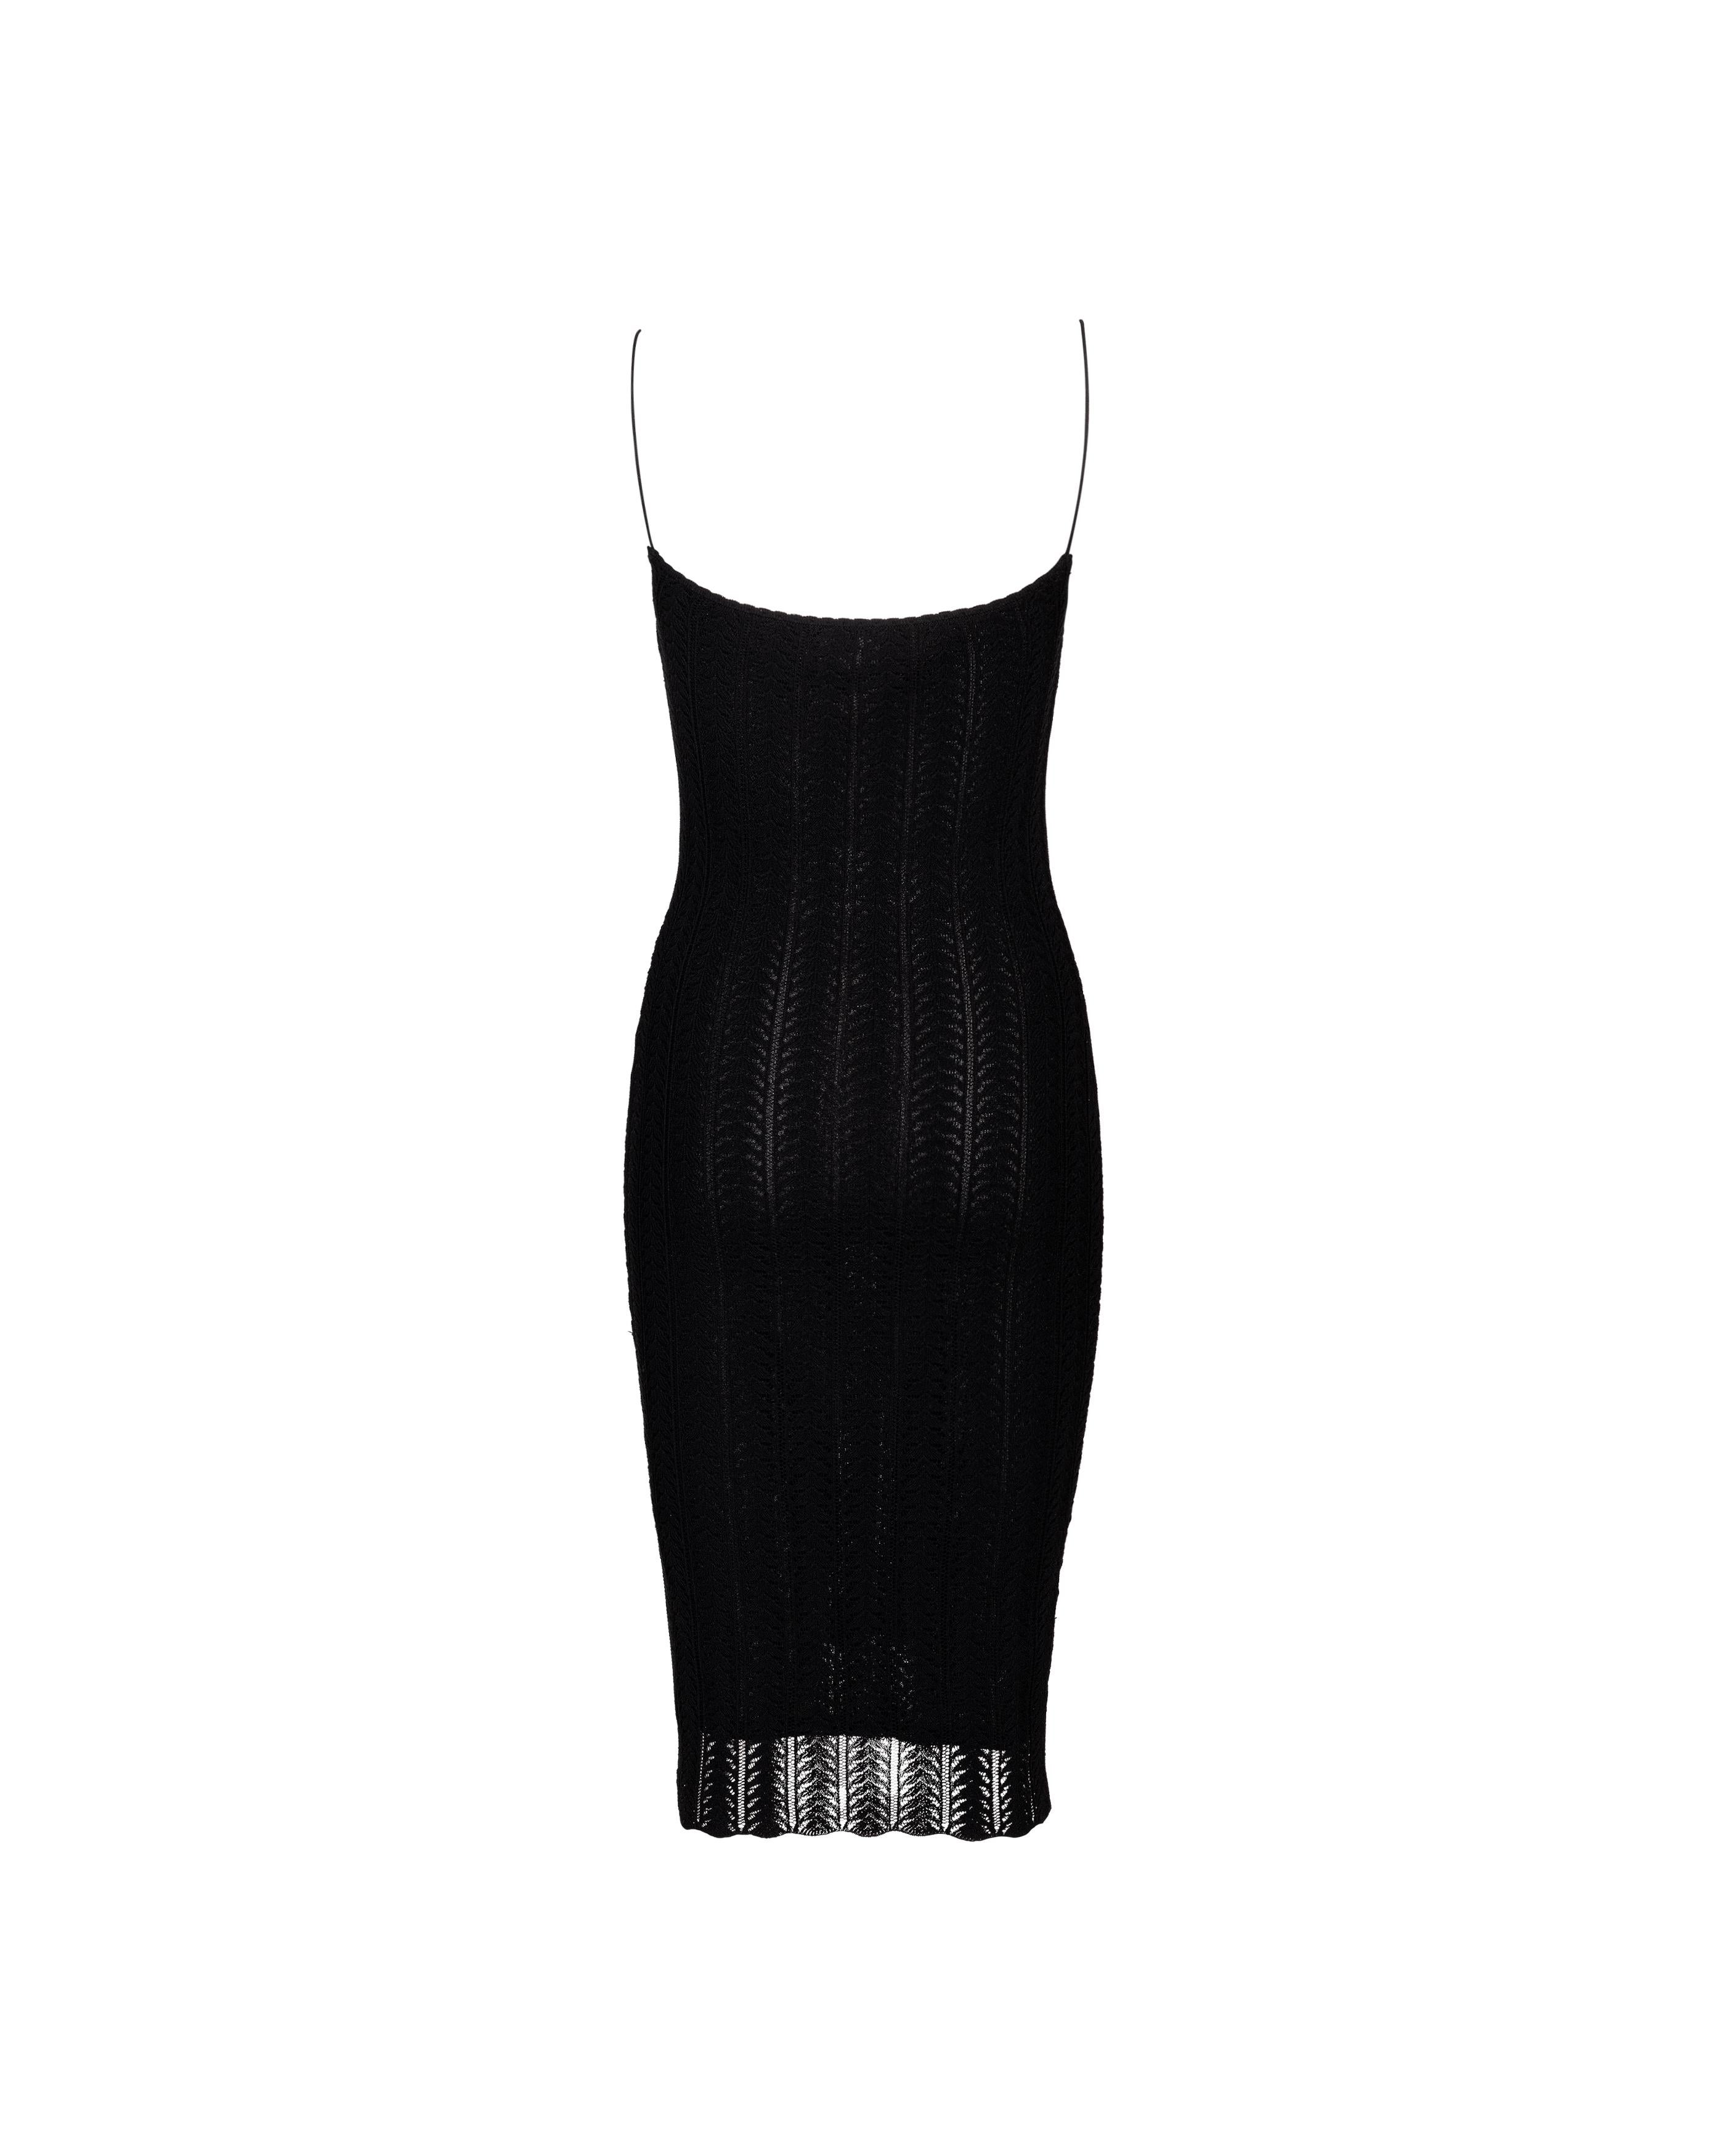 Robe-culotte John Galliano en maille ajourée noire à longueur genou, Resort 2000 Pour femmes en vente